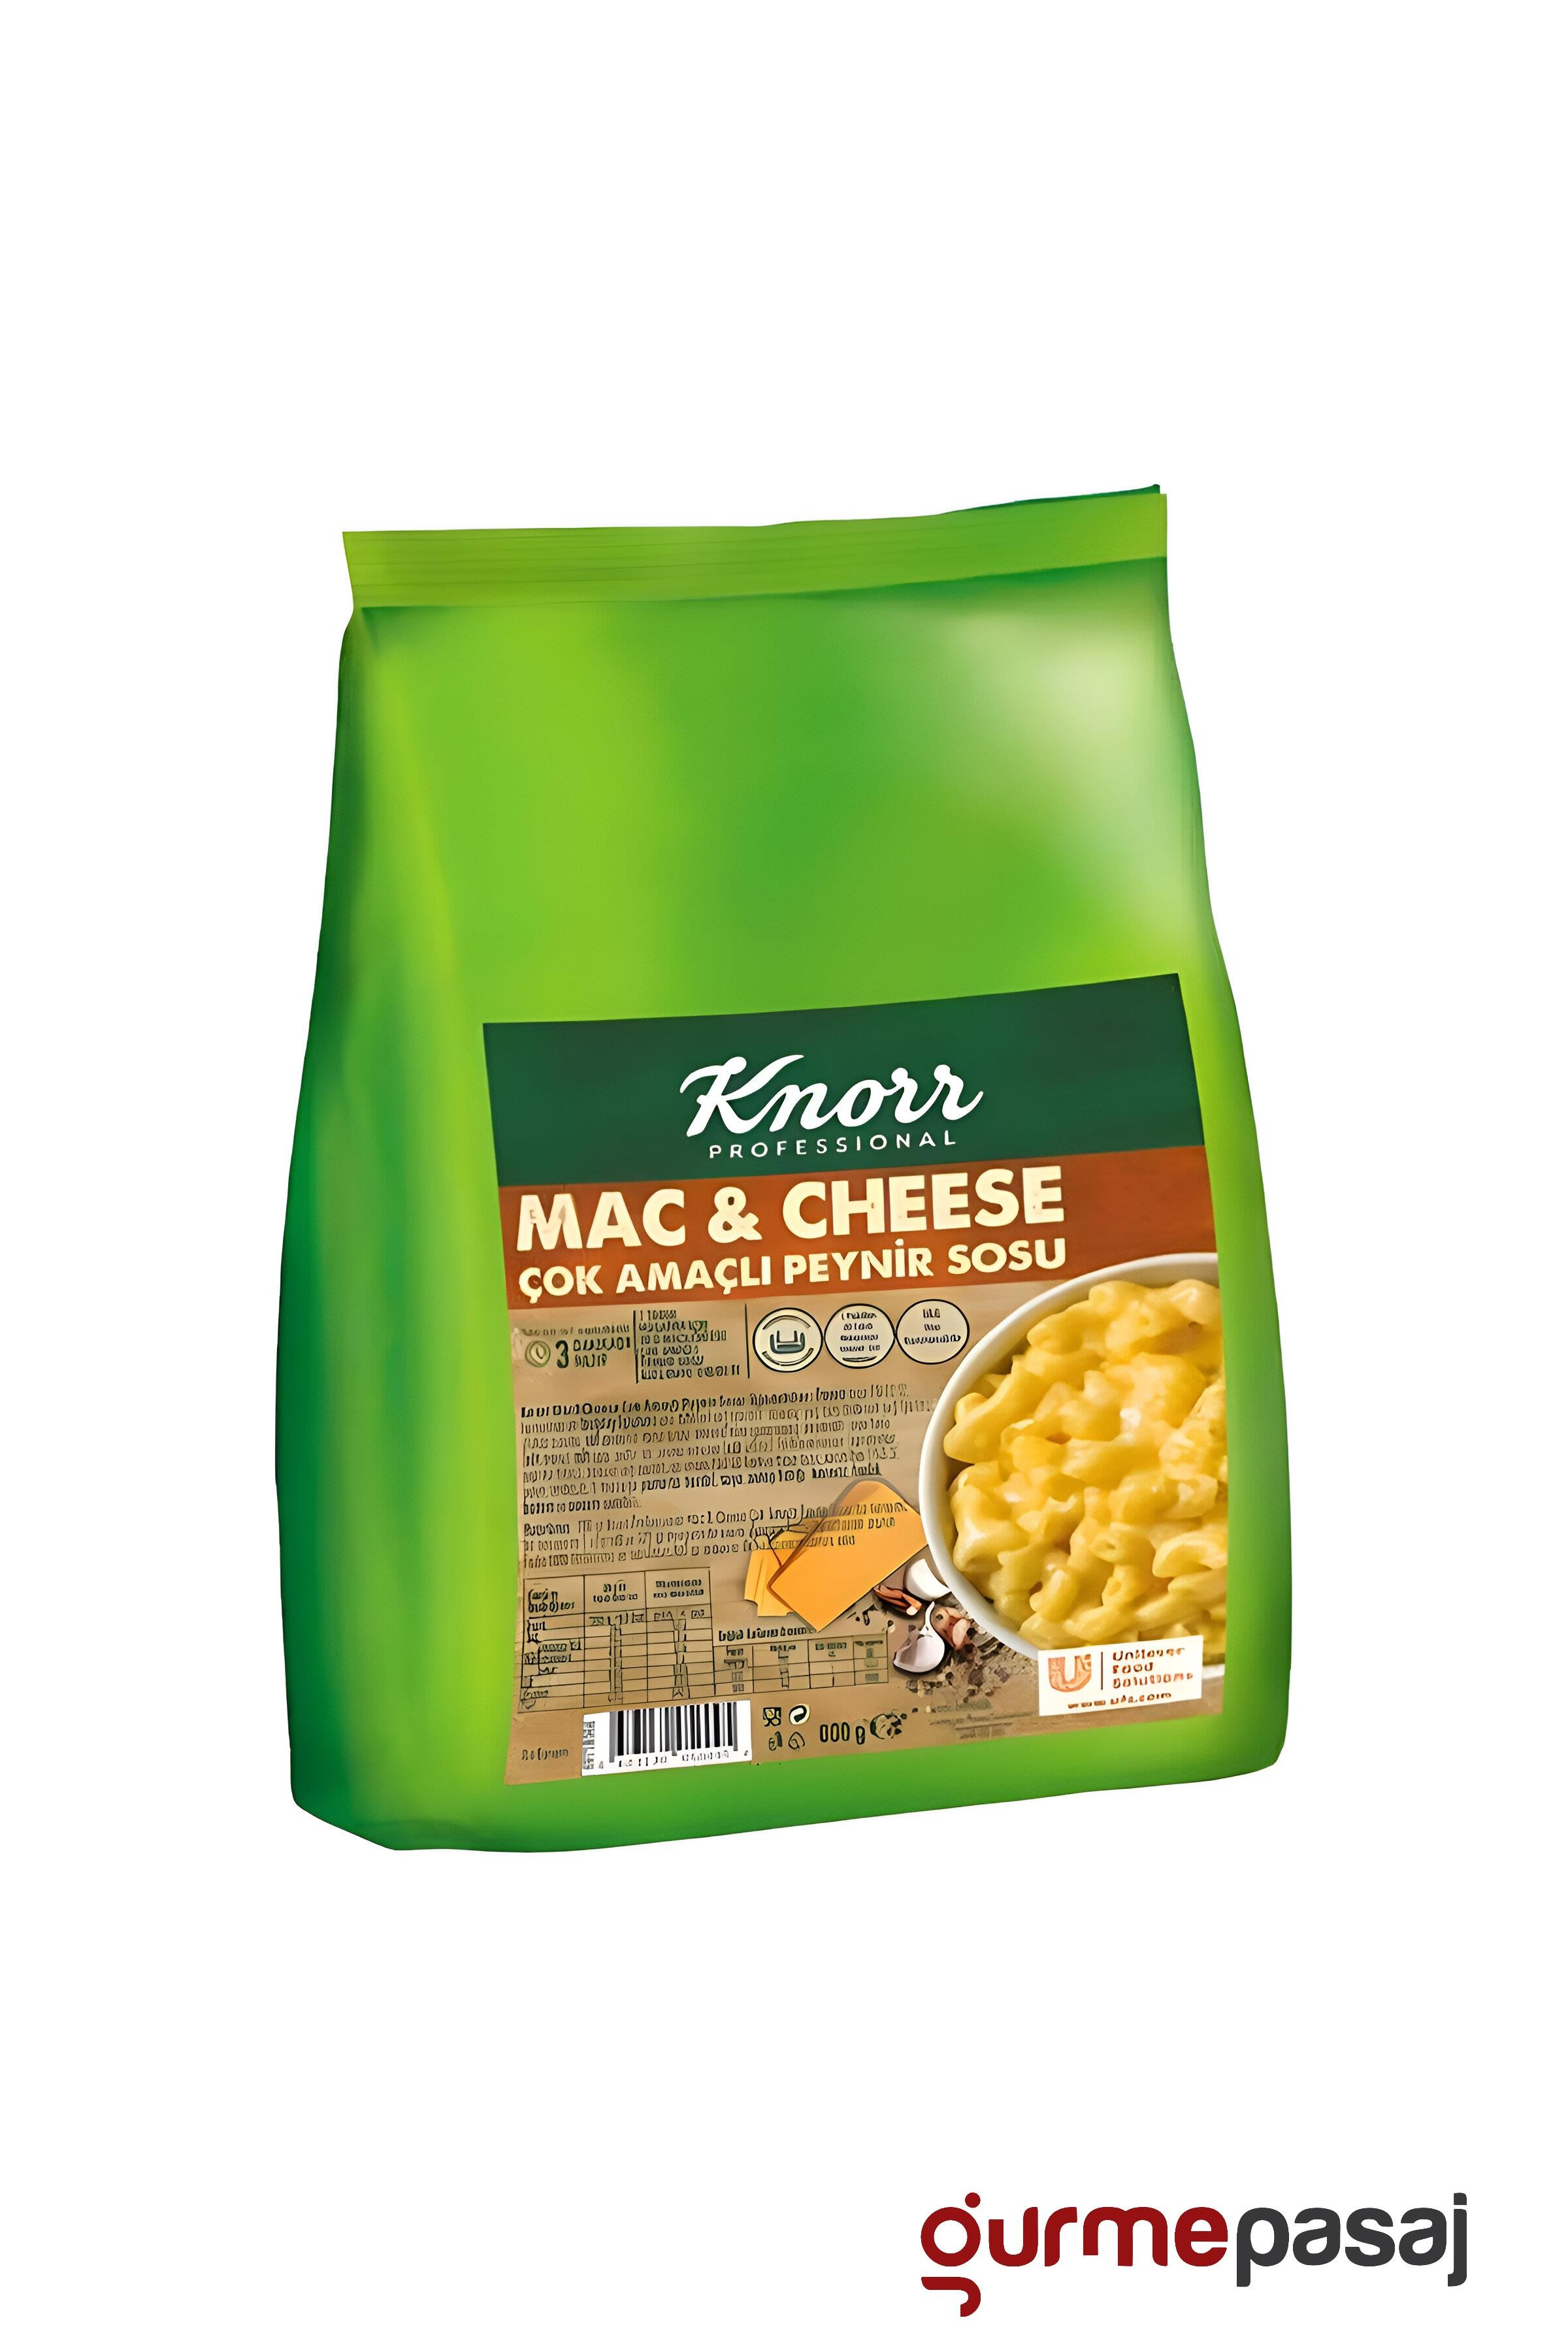 Knorr Mac & Cheese Çok Amaçlı Peynir Sosu 800G